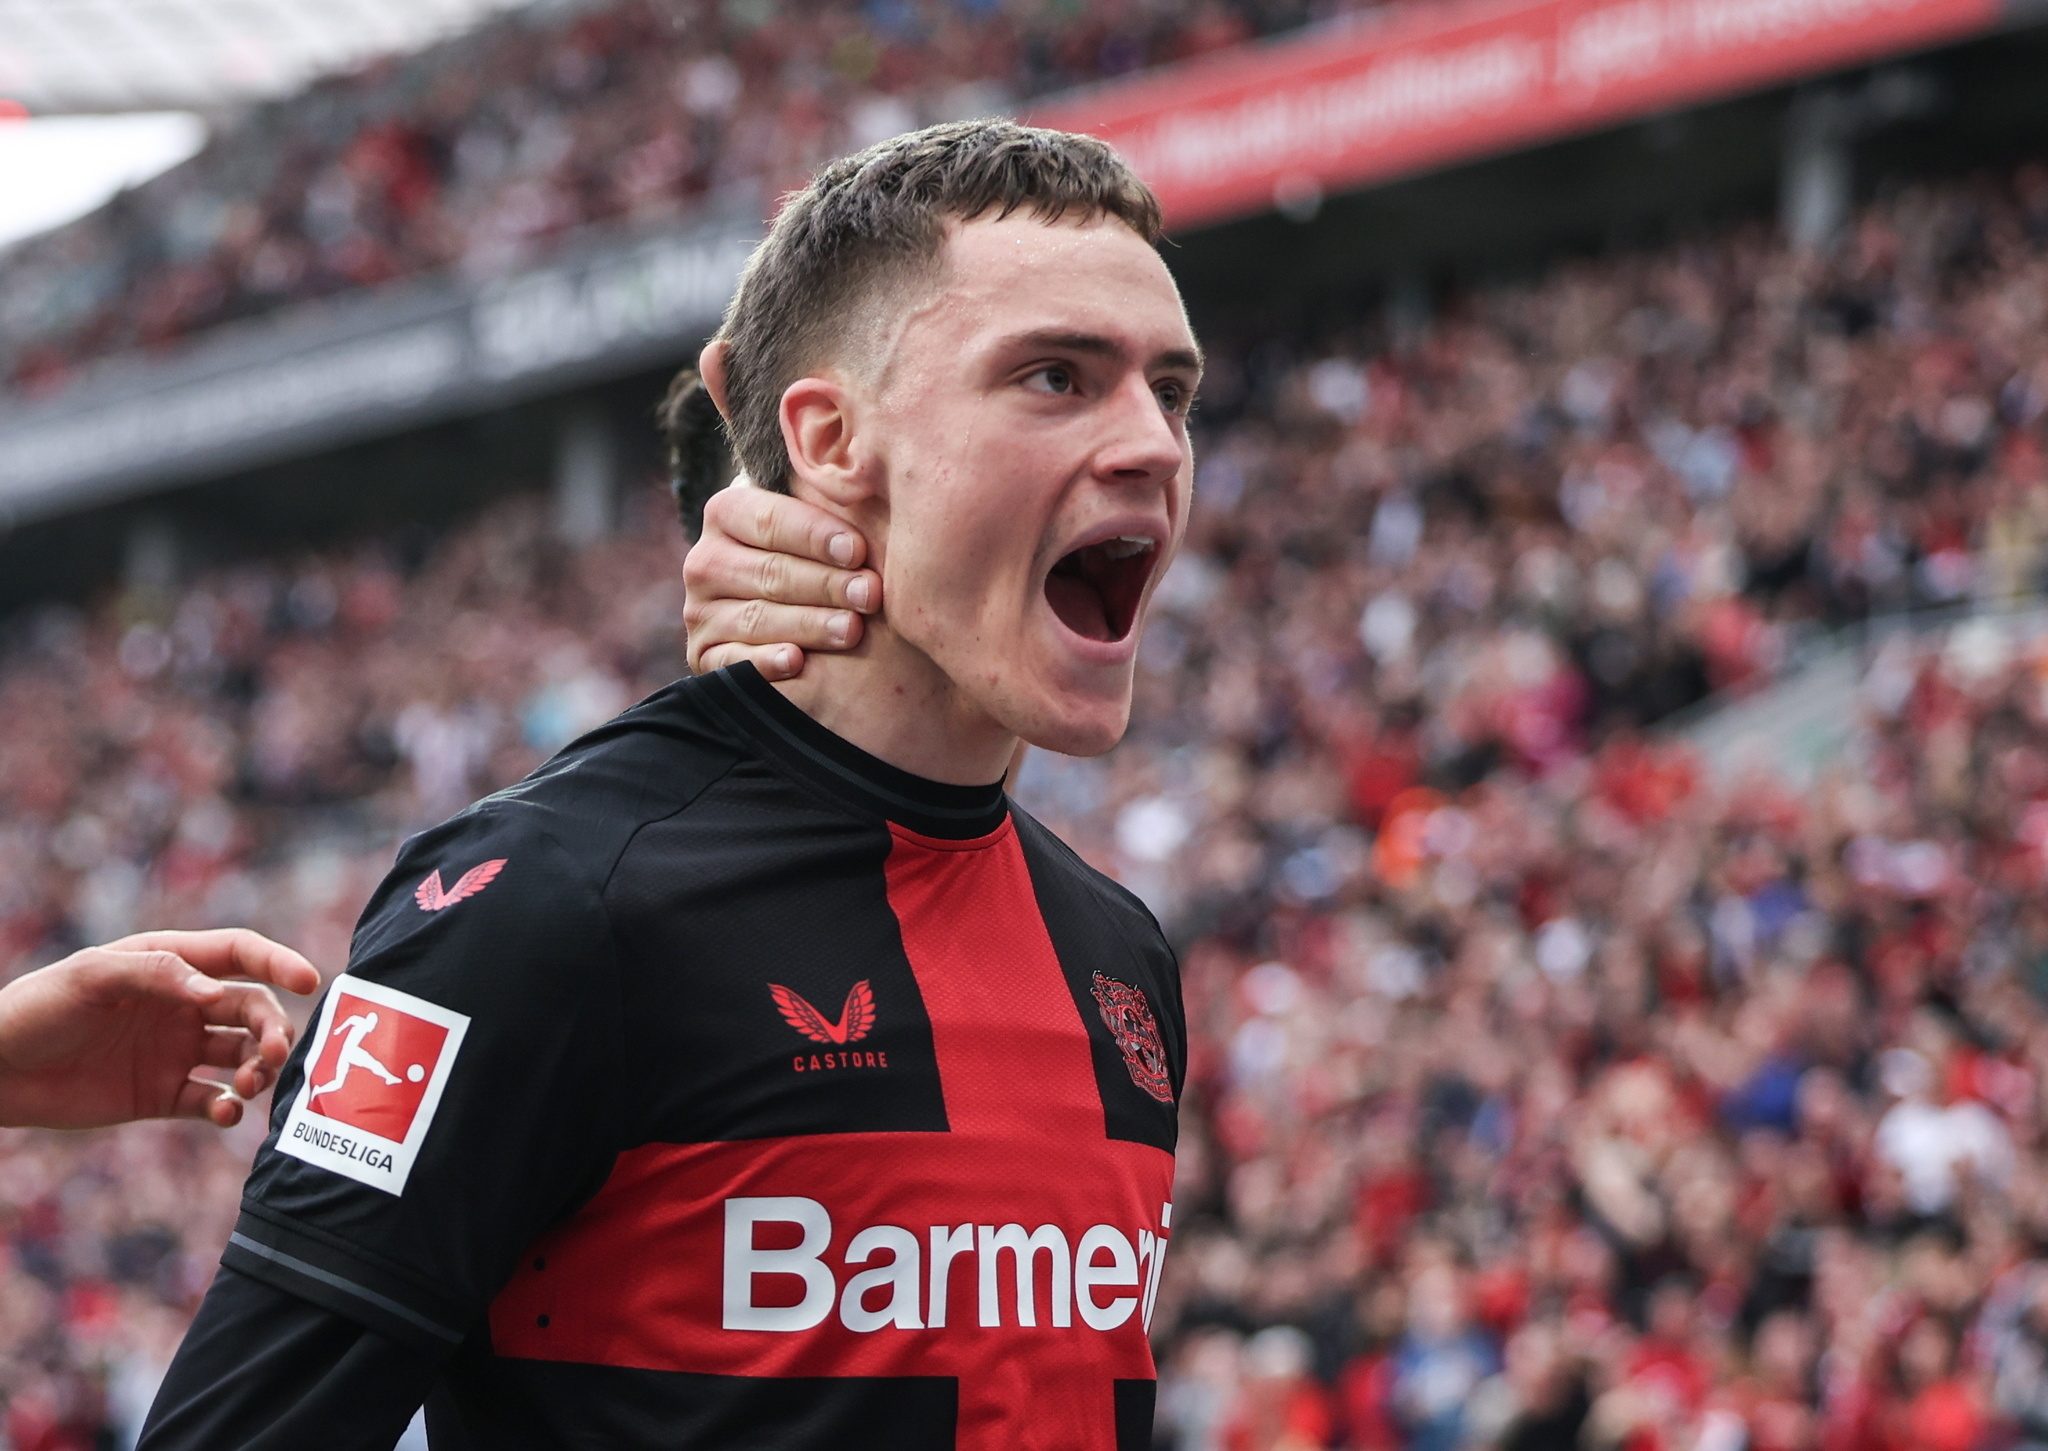 Leverkusens Florian Wirtz celebrates scoring the 3-0 goal